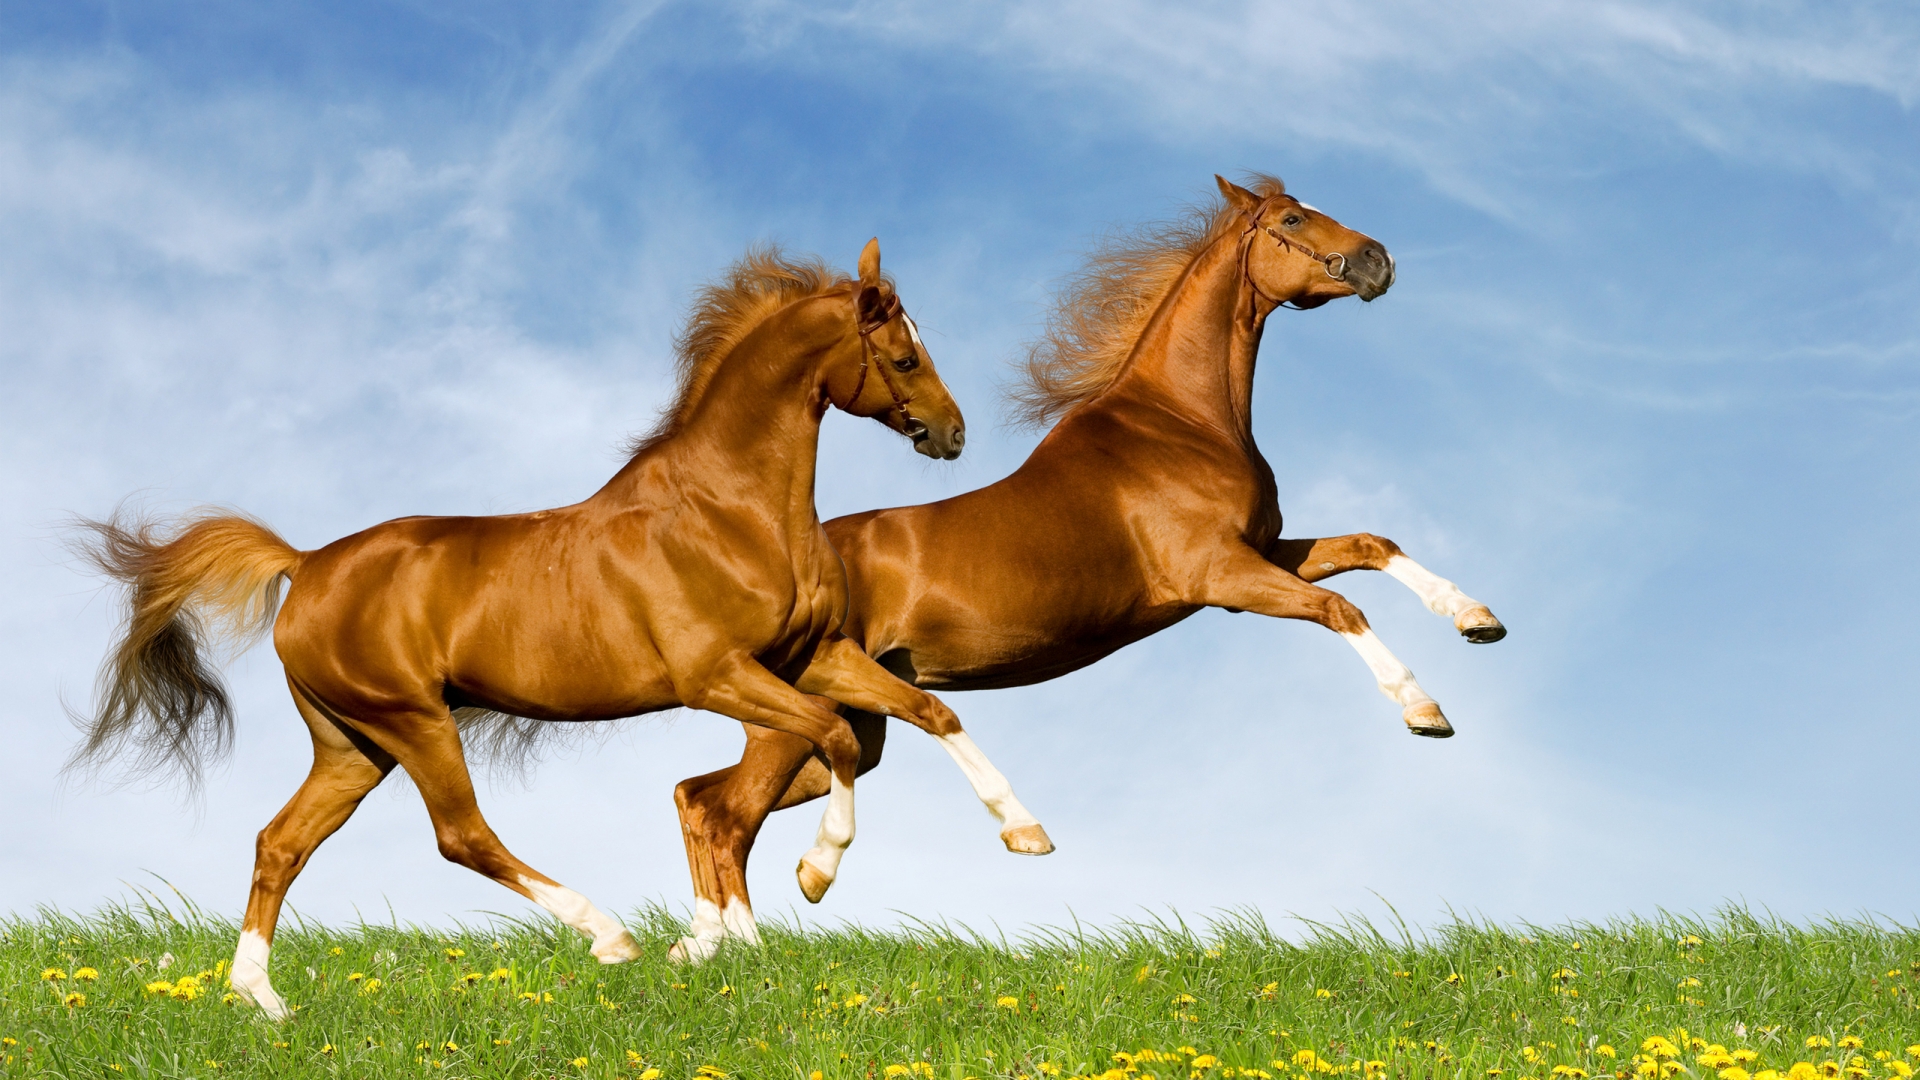 Horses Running for 1920 x 1080 HDTV 1080p resolution